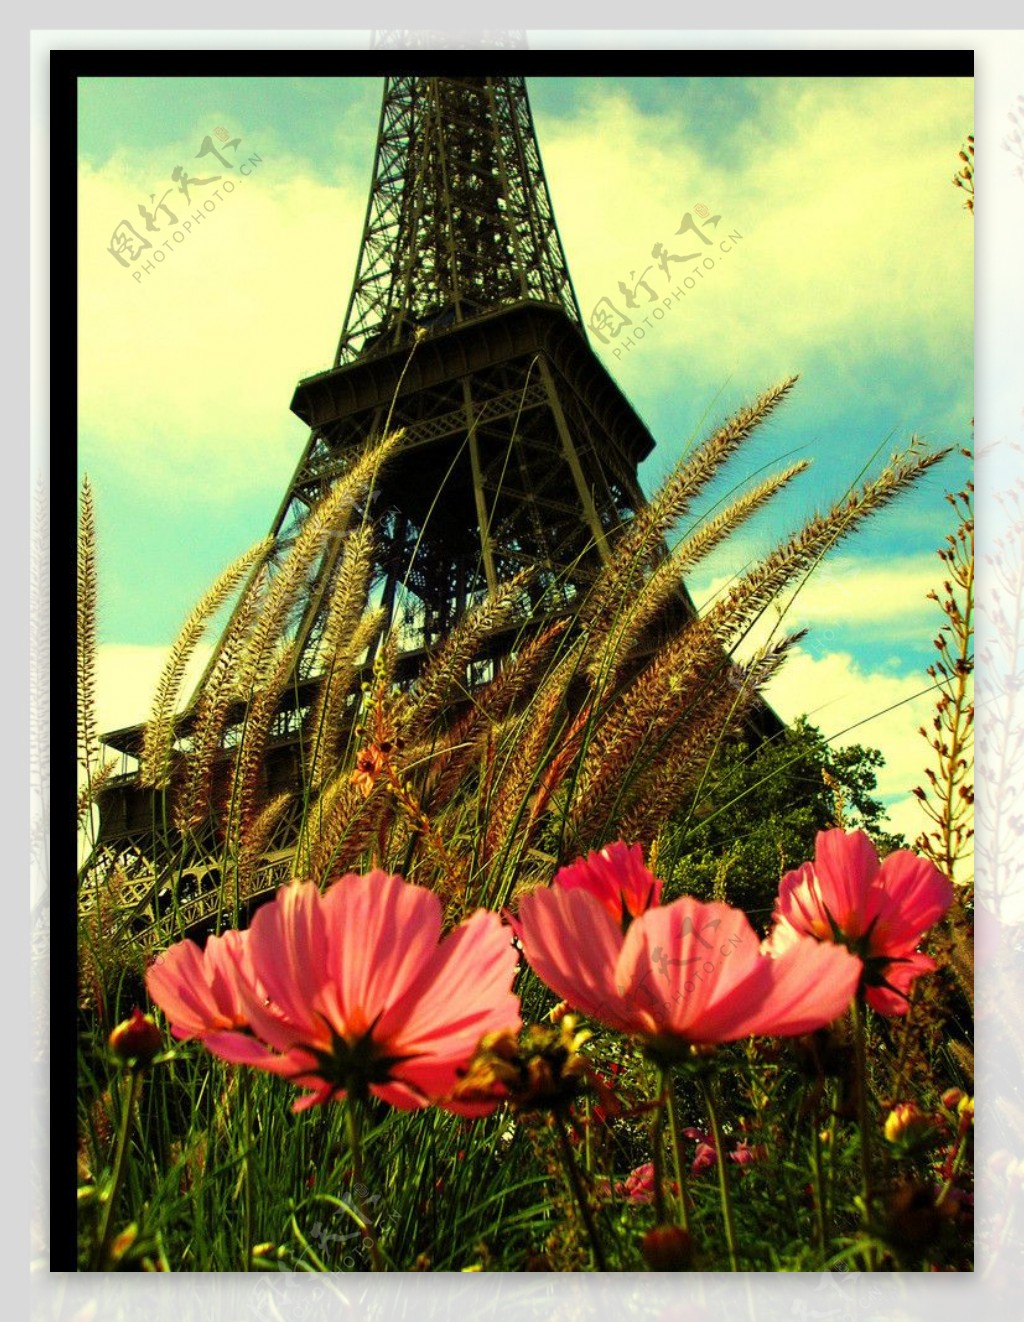 巴黎铁塔鲜花客厅装饰图片